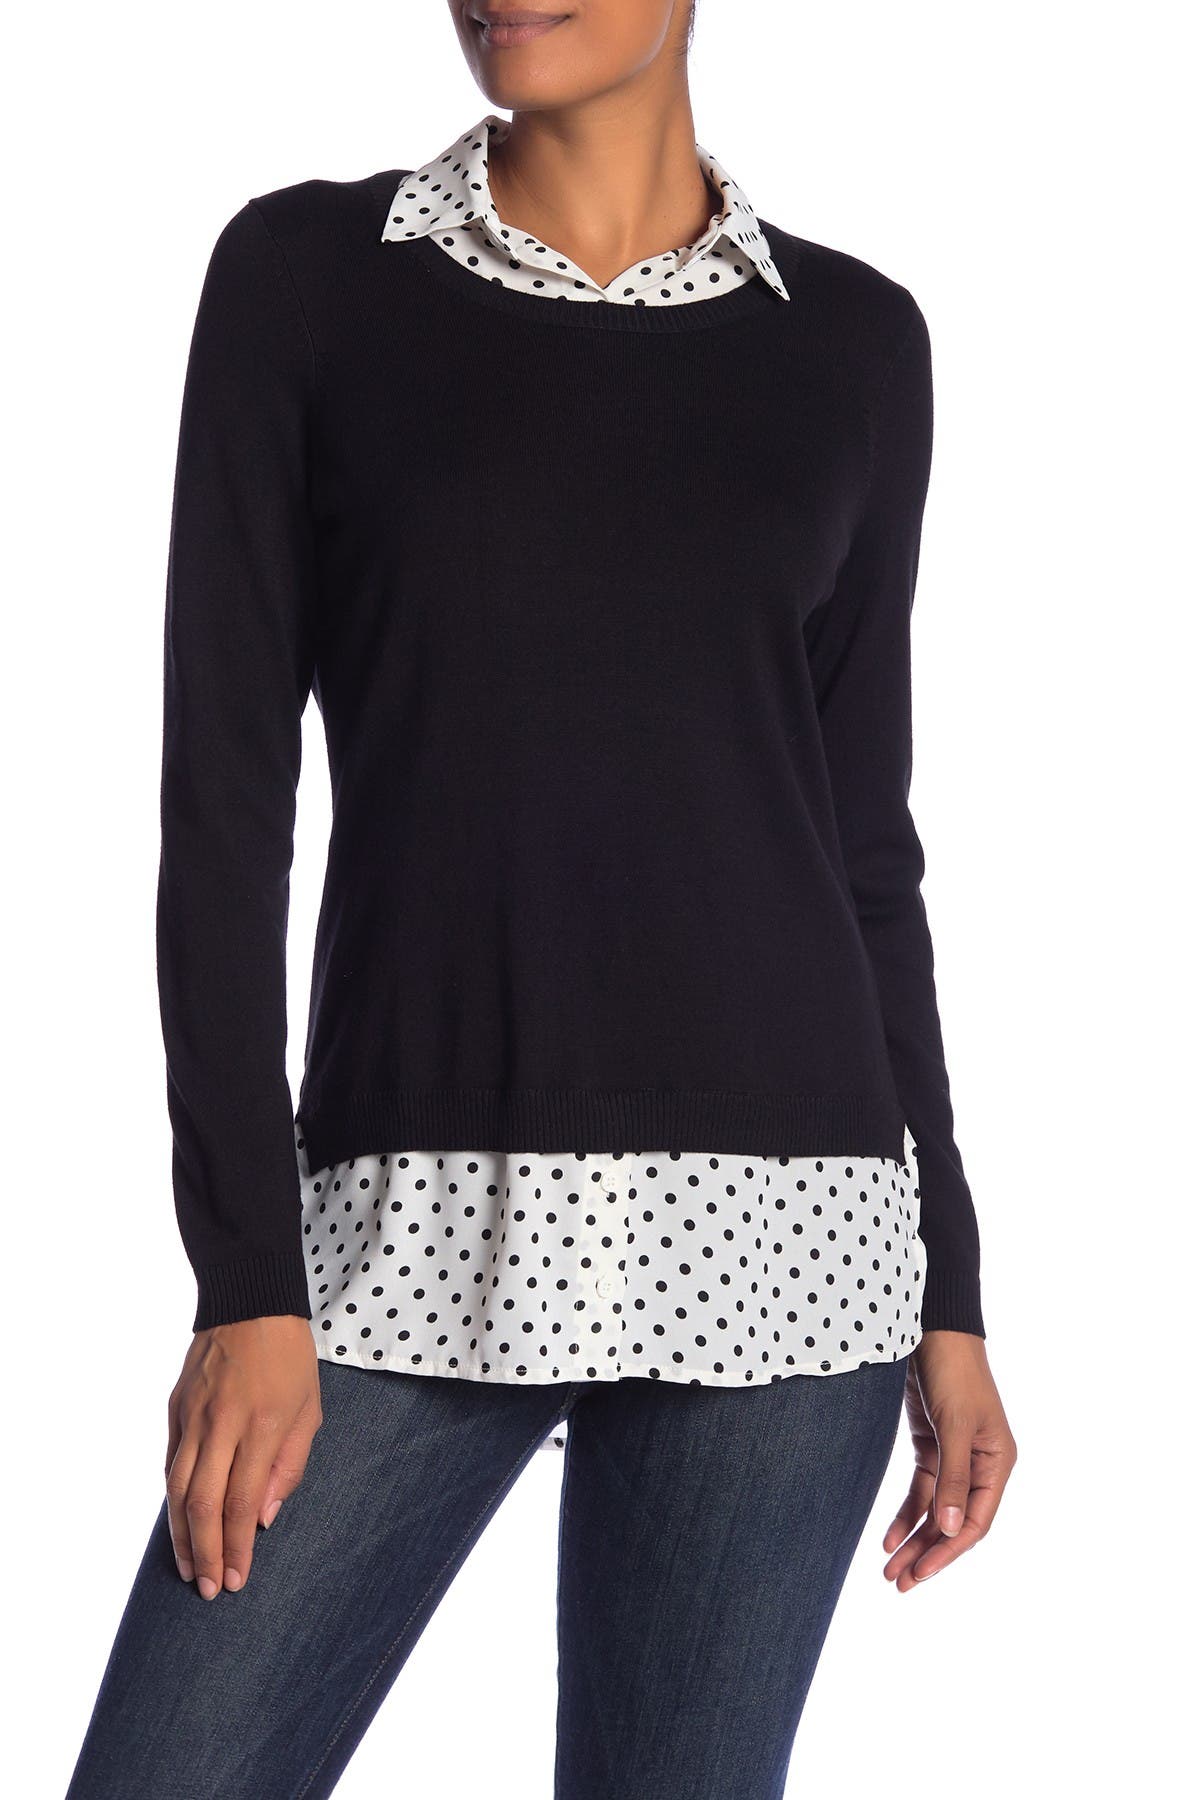 Nordstrom: Peter Pan Collar Sweater Shirt $26.97